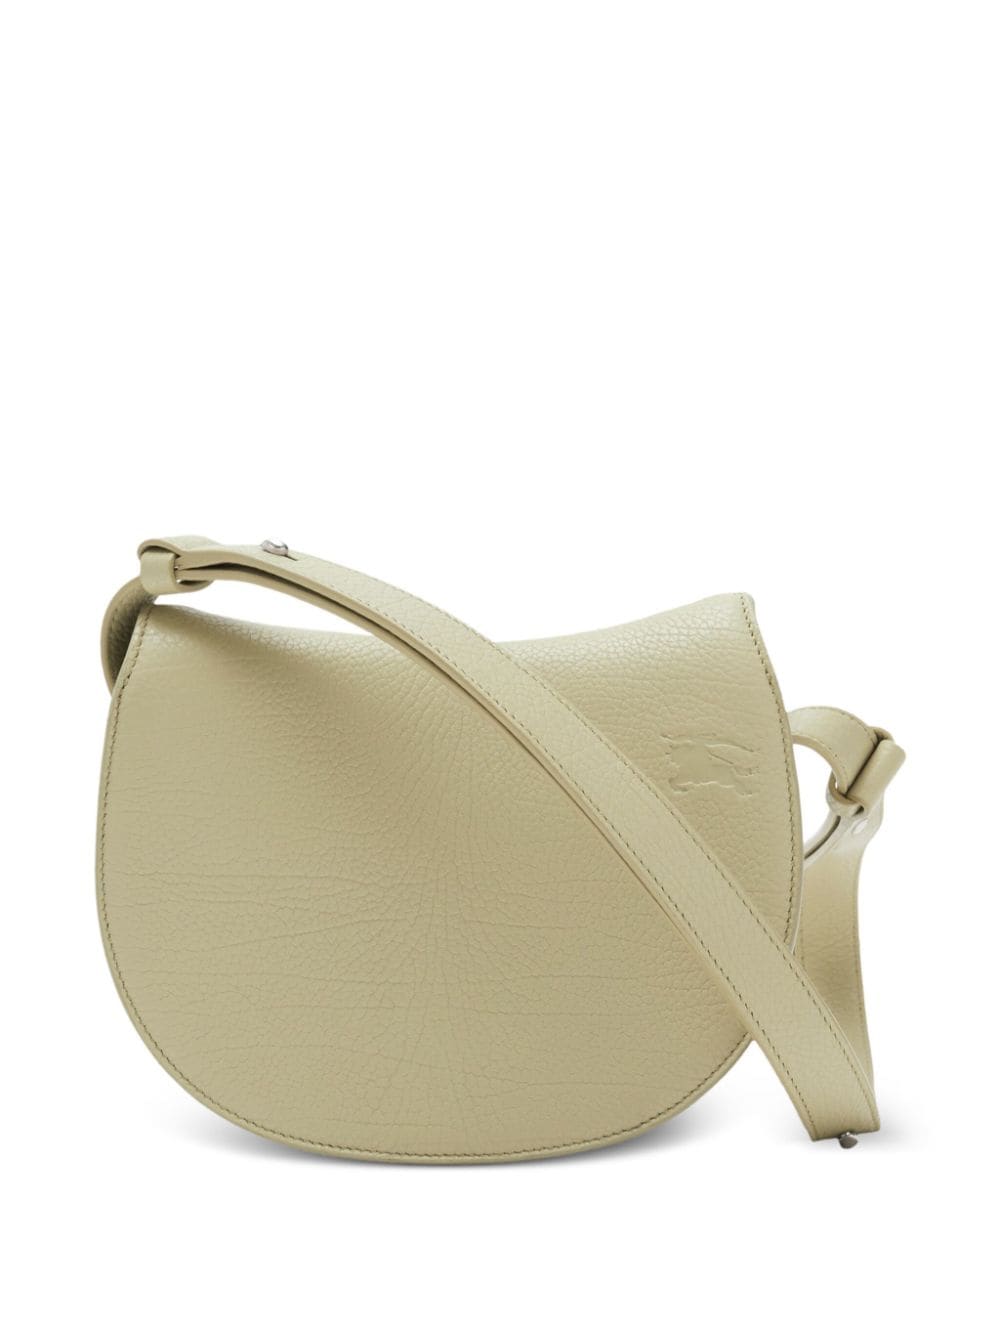 حقيبة صغيرة بتصميم خيالي مصنوعة من جلد عجل ممتاز للنساء